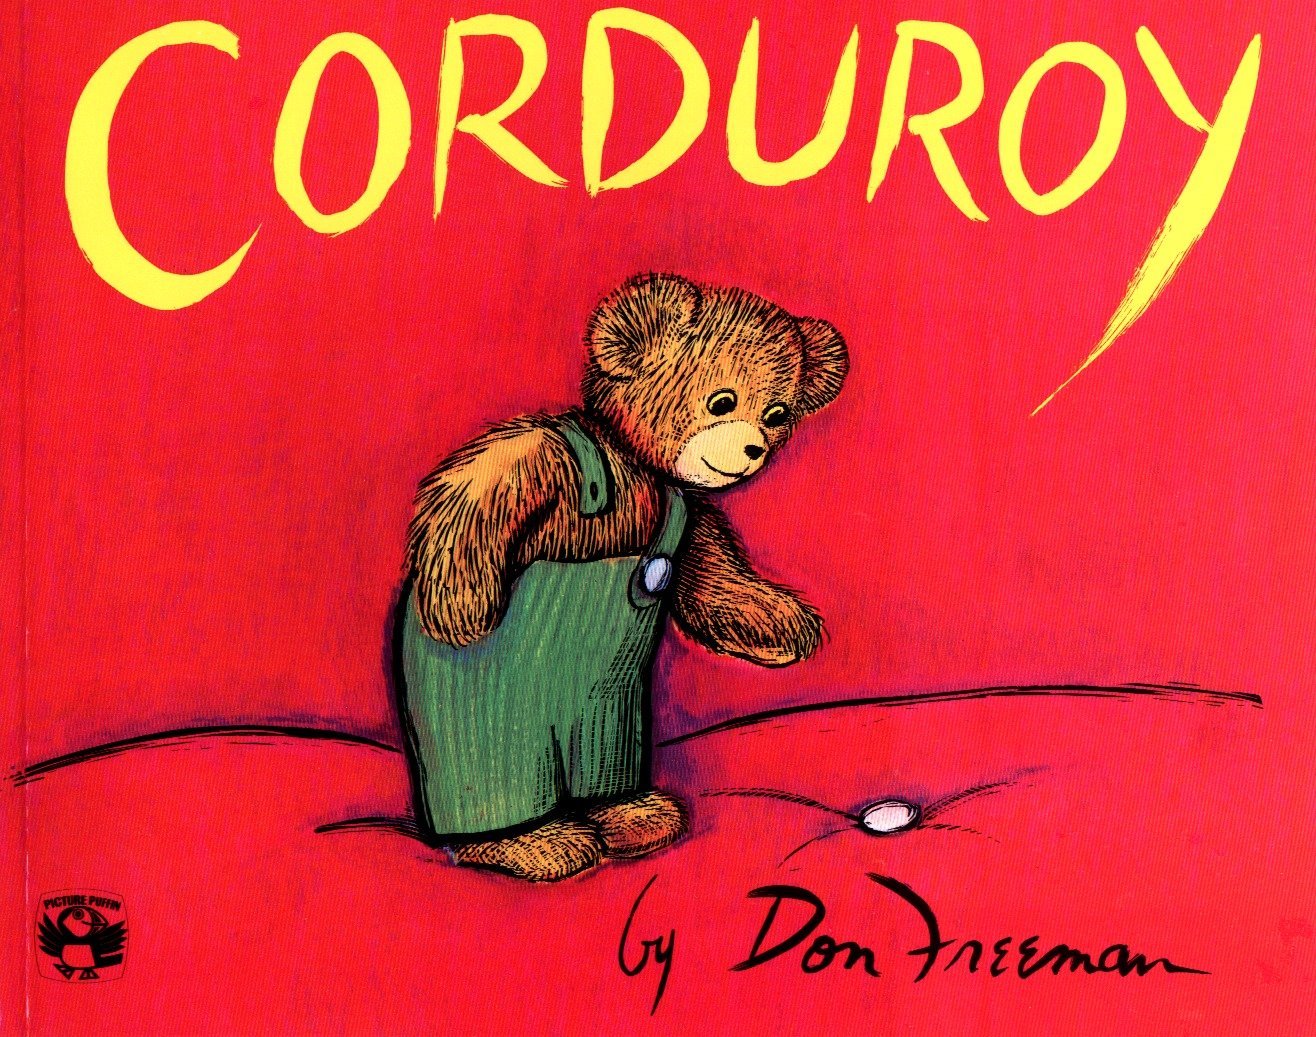 7. 'Corduroy'